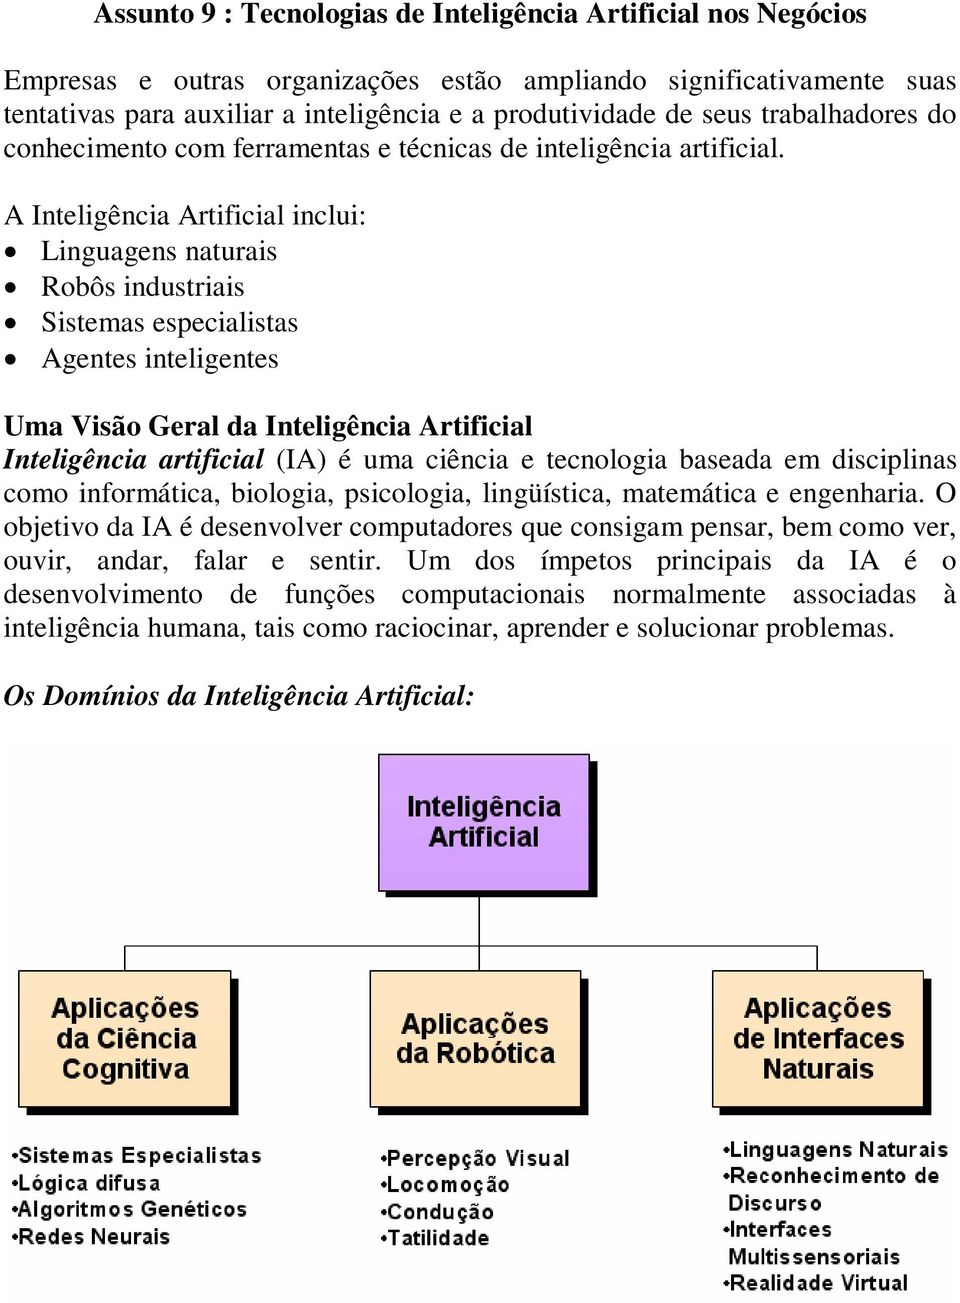 A Inteligência Artificial inclui: Linguagens naturais Robôs industriais Sistemas especialistas Agentes inteligentes Uma Visão Geral da Inteligência Artificial Inteligência artificial (IA) é uma